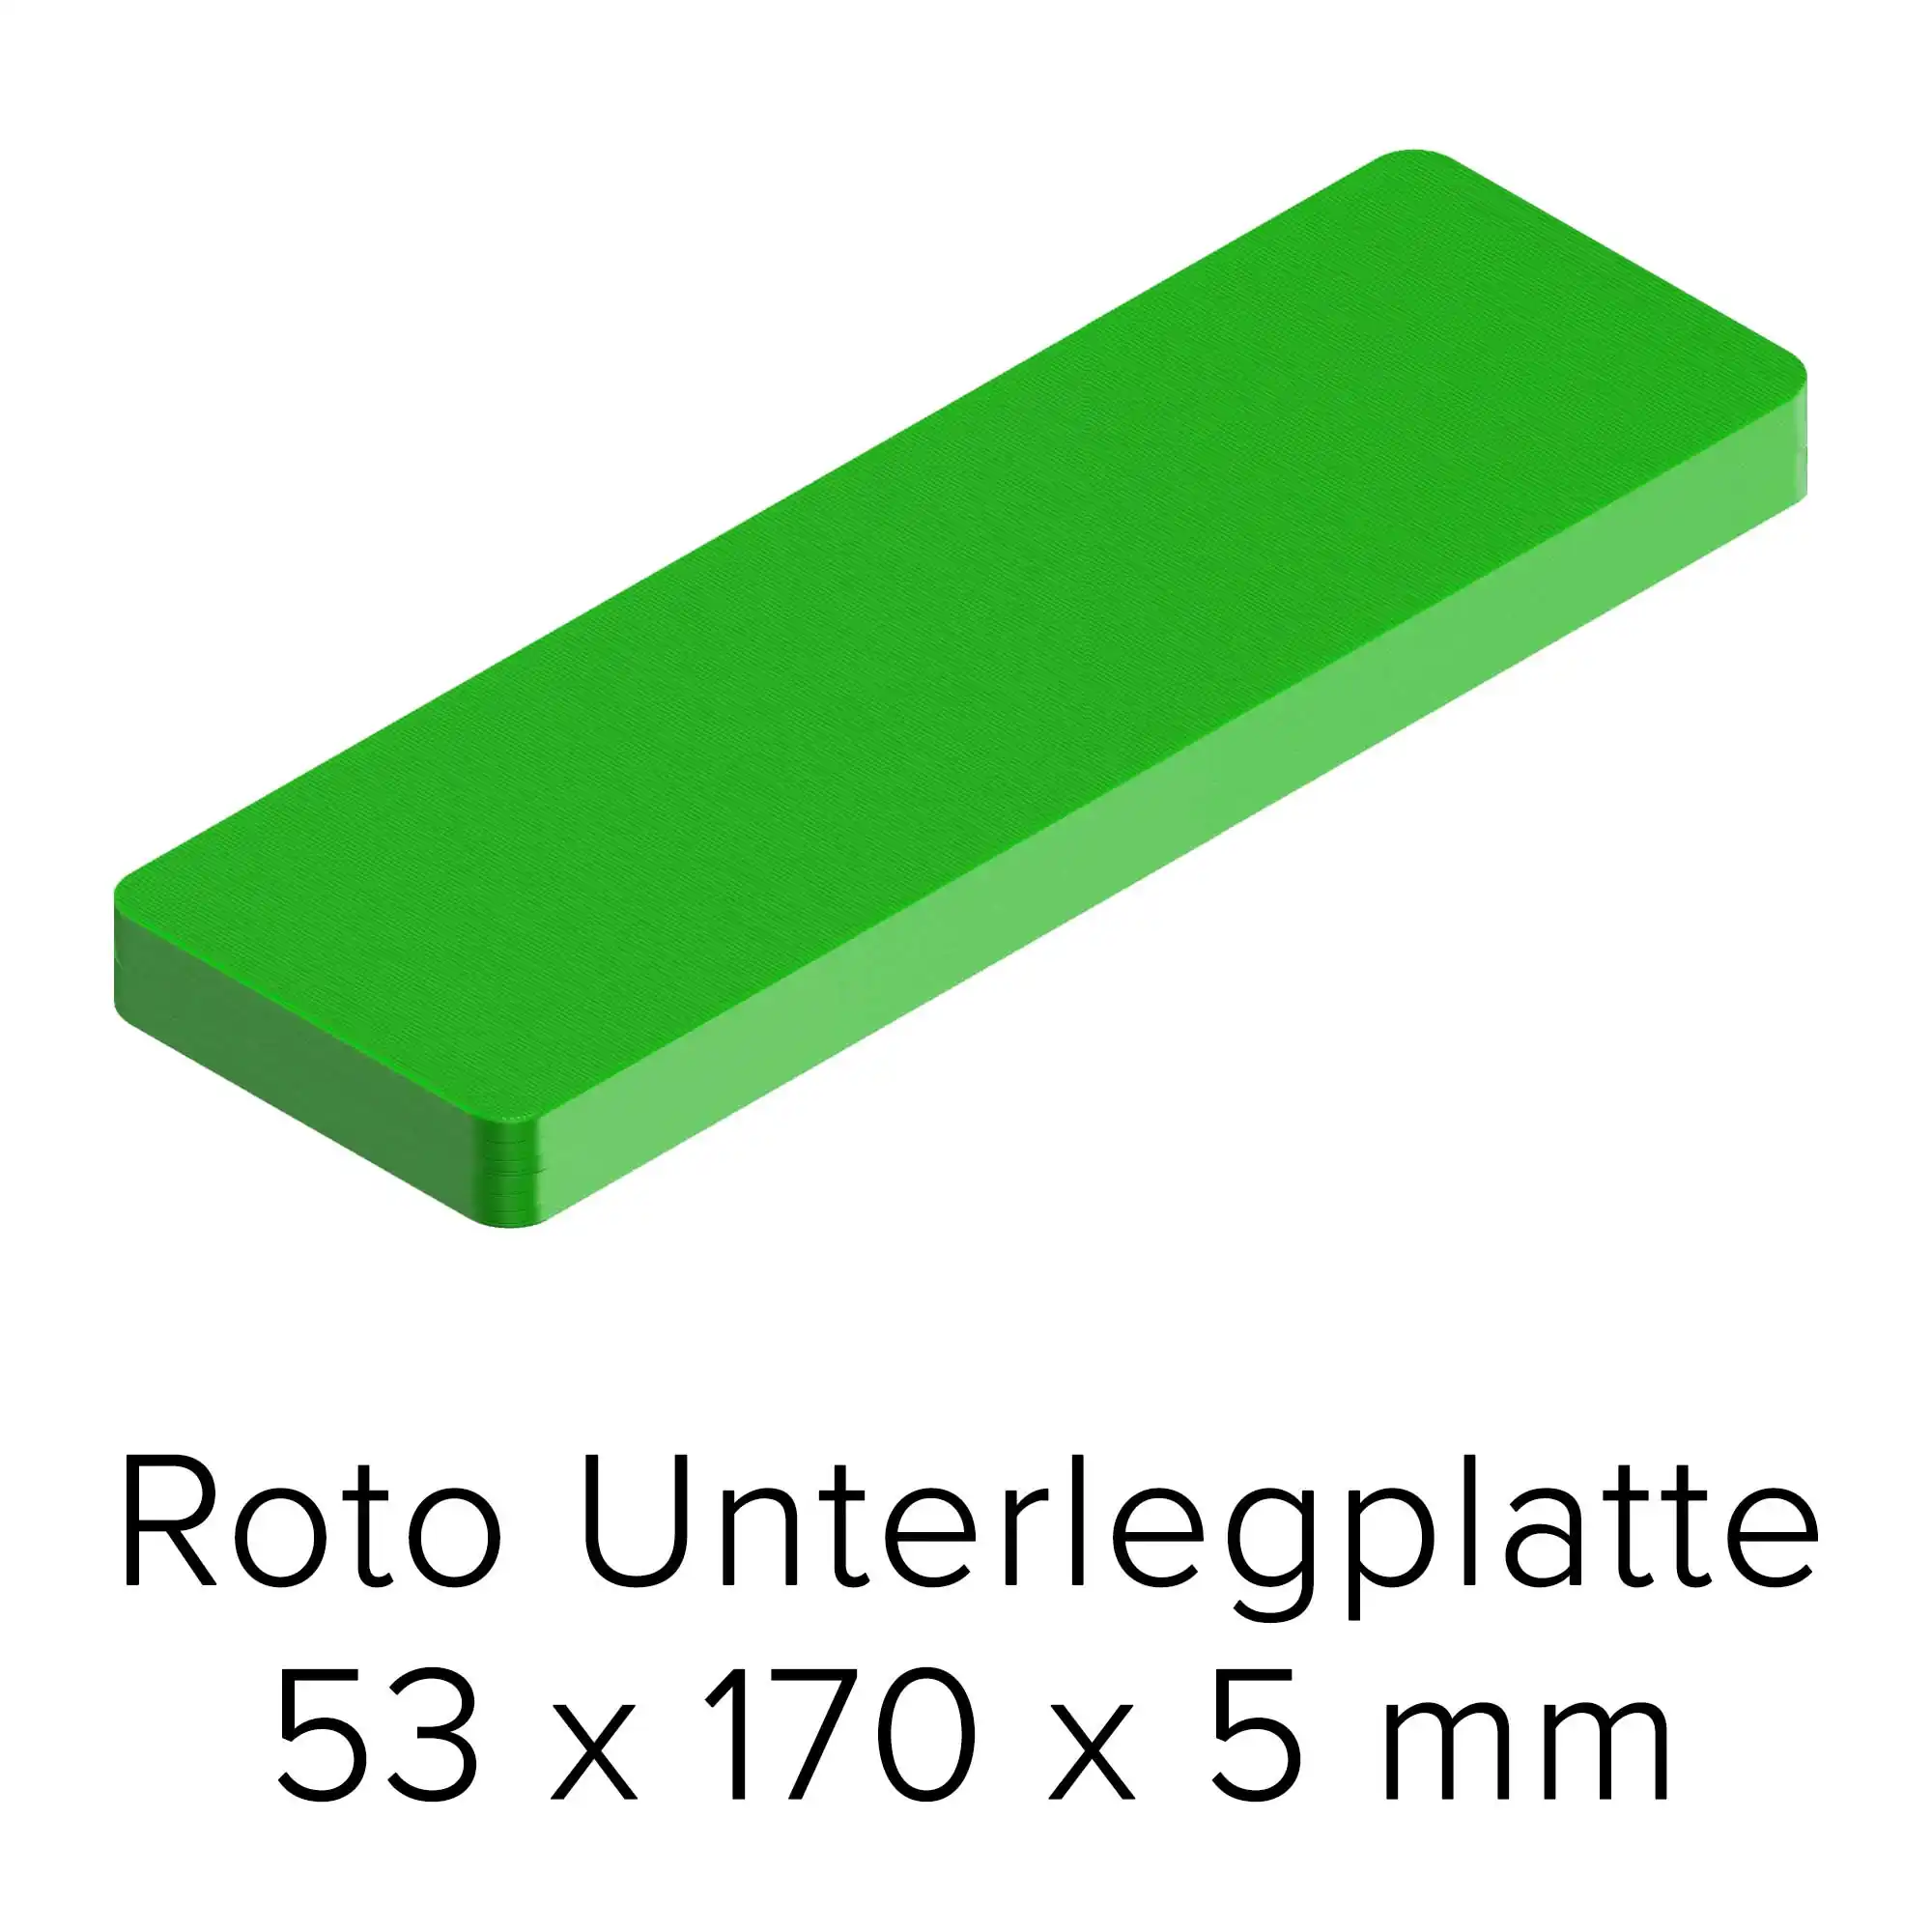 Roto Unterlegplatte 53 x 170 x 5 mm